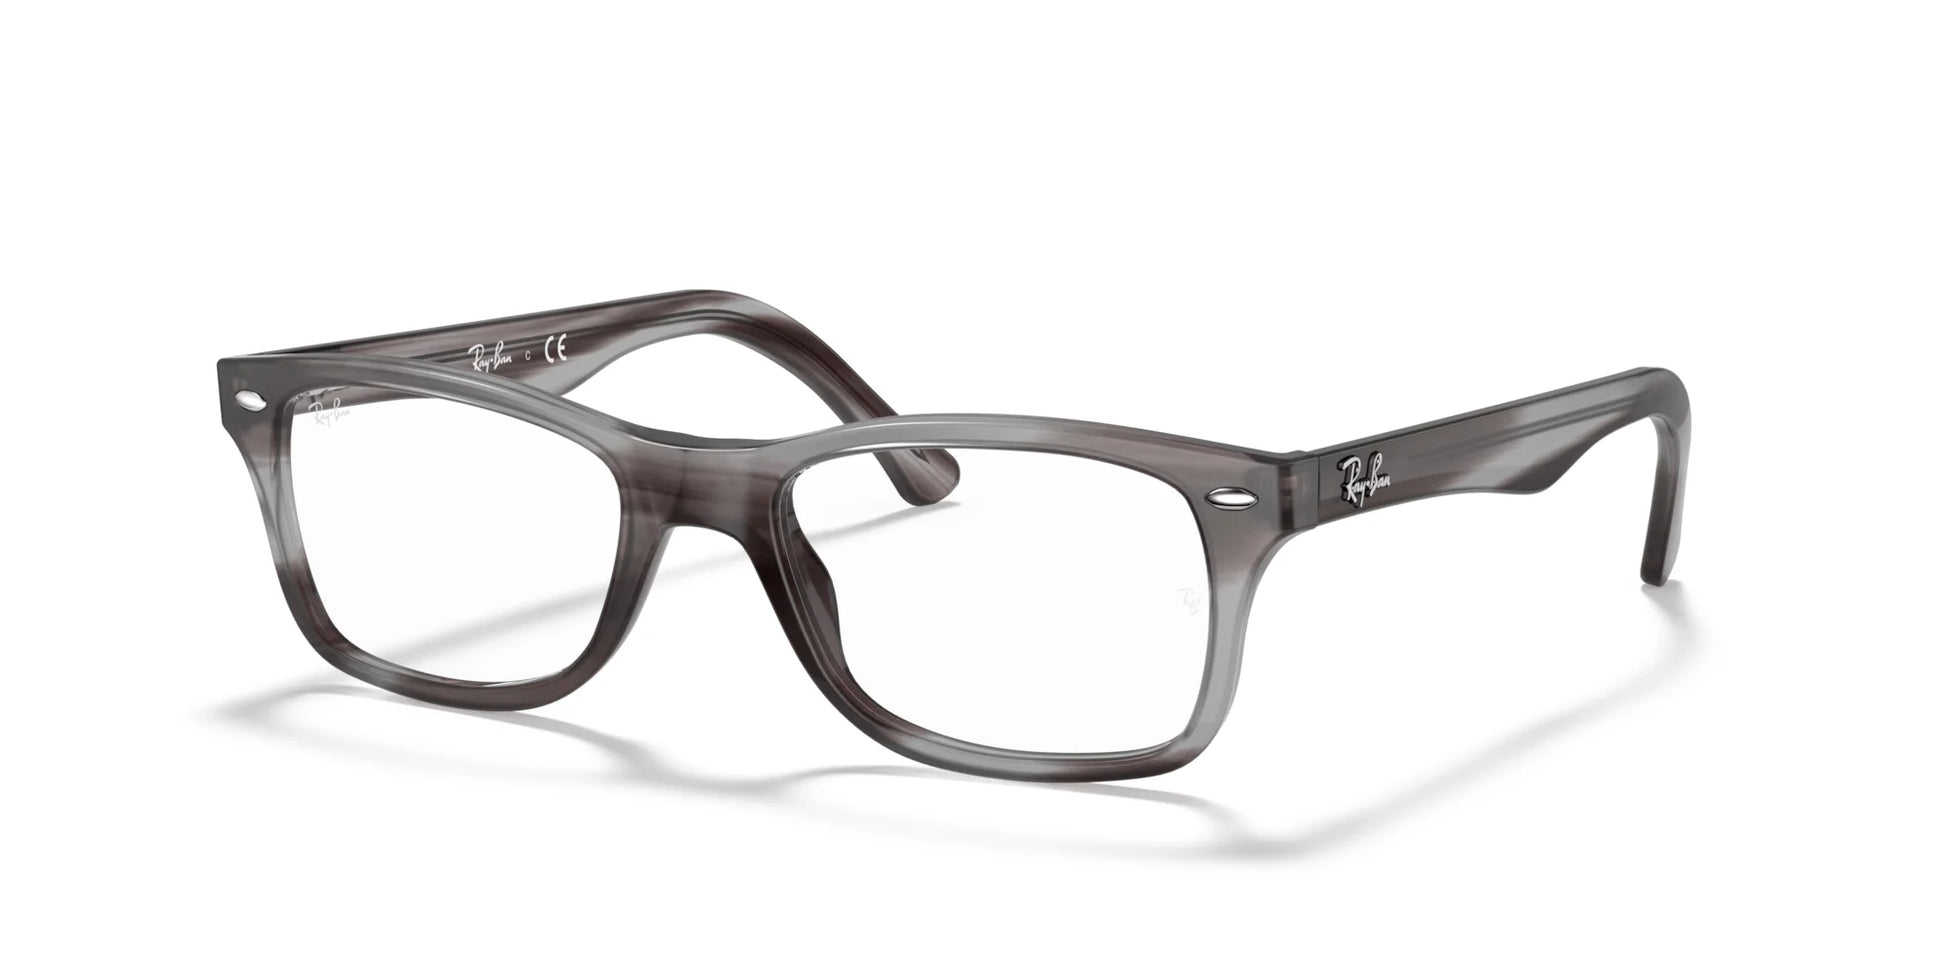 Ray-Ban RX5228 Eyeglasses Striped Grey / Clear